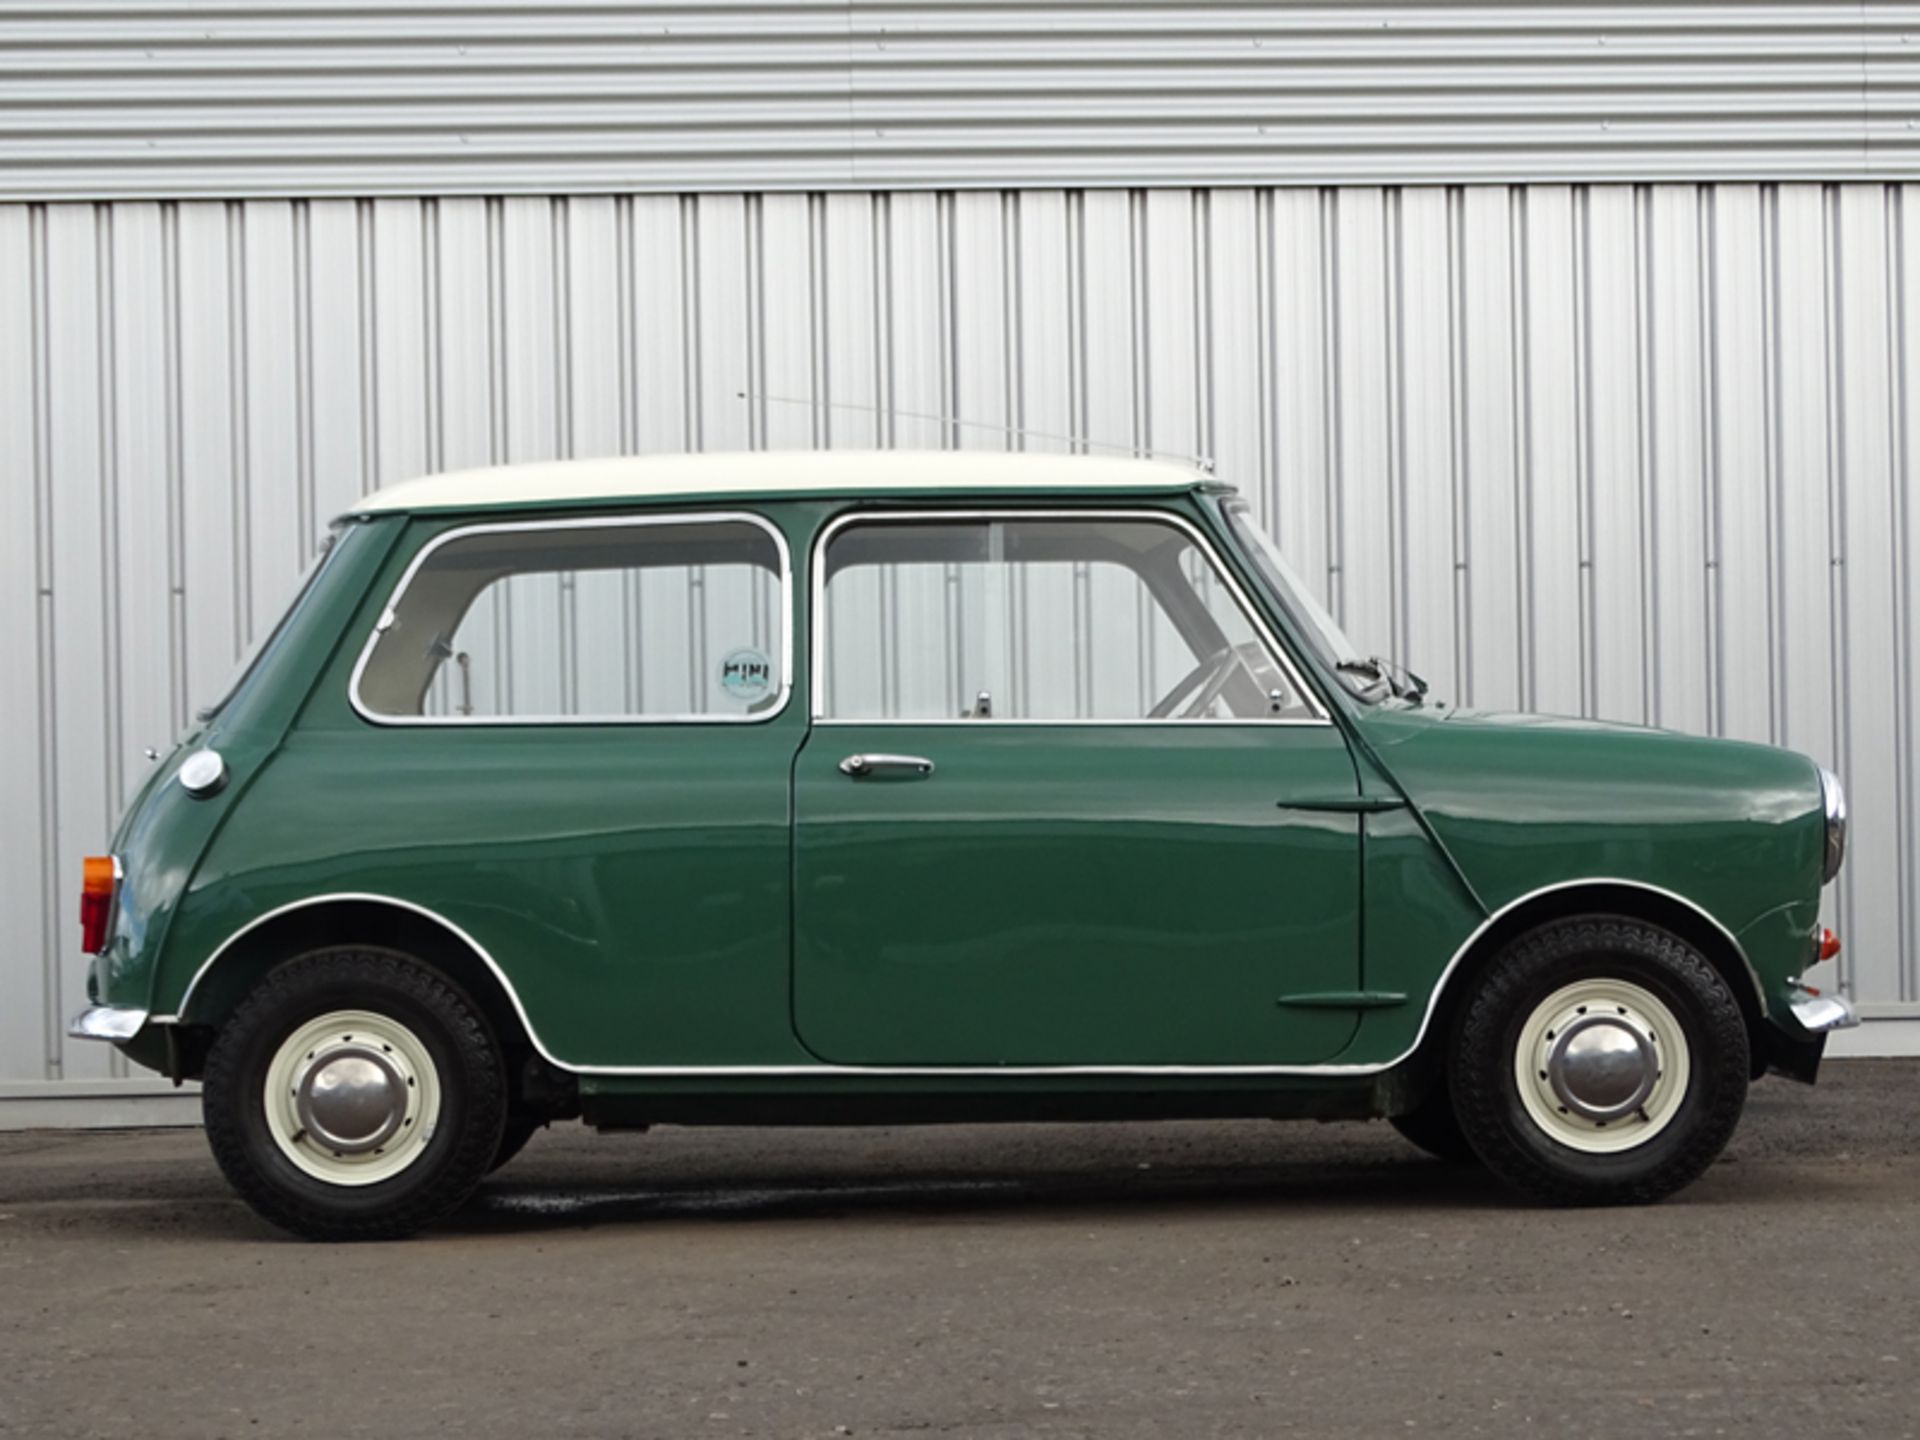 1966 Austin Mini Cooper S - Image 3 of 9